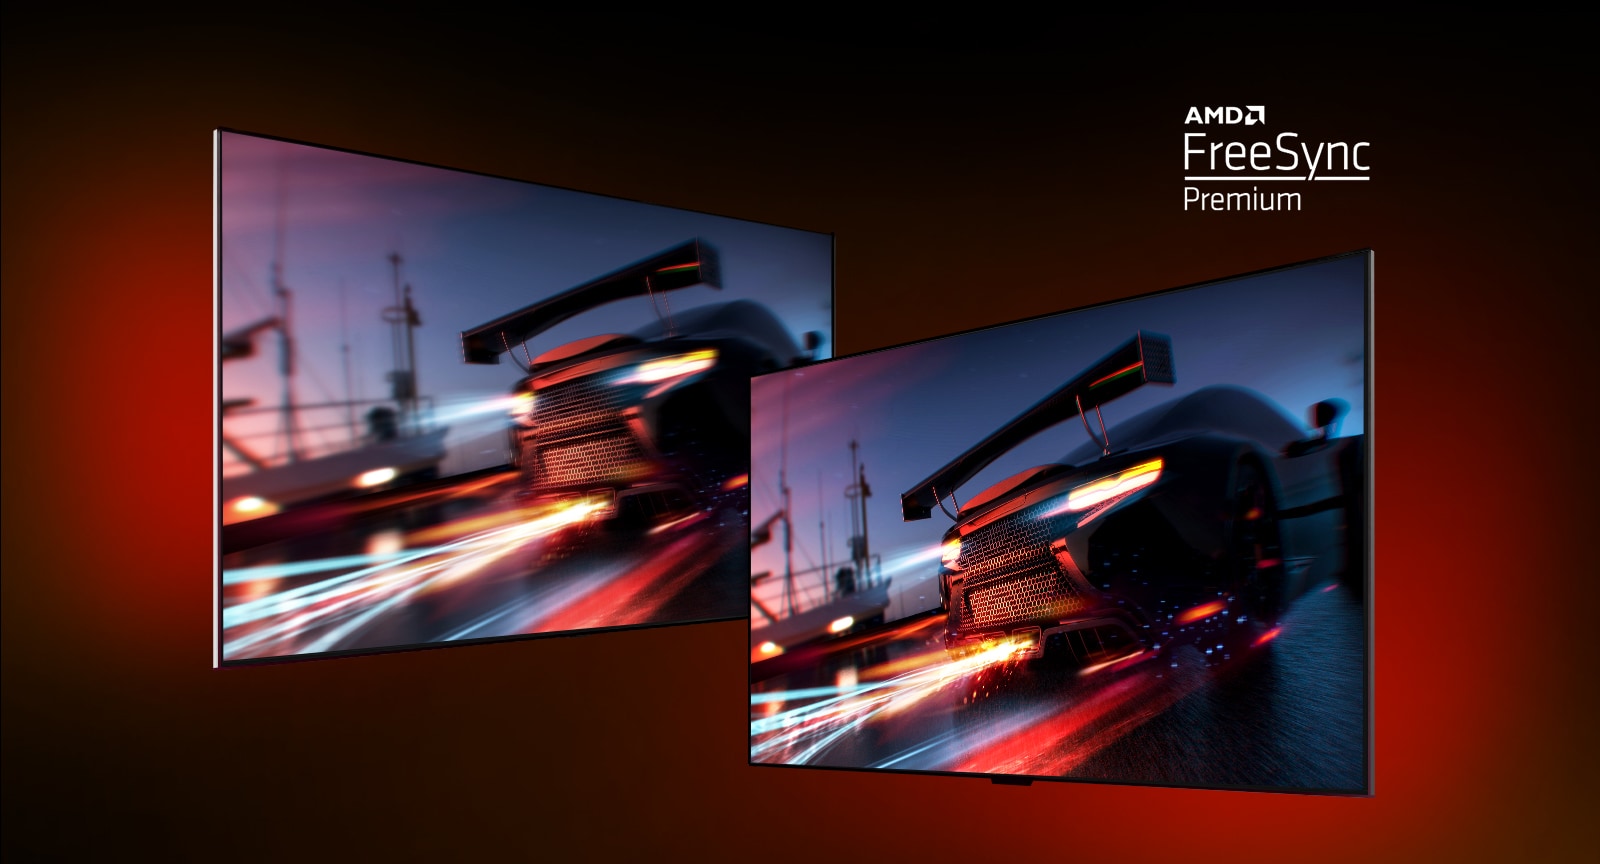 Có hai TV - bên trái cho thấy một cảnh trò chơi đua xe với một chiếc xe đua. Bên phải cũng hiển thị cùng một cảnh trò chơi nhưng trong một hình ảnh hiển thị sáng hơn và rõ ràng hơn. Ở góc trên bên phải hiển thị logo AMD FreeSync Premium.  